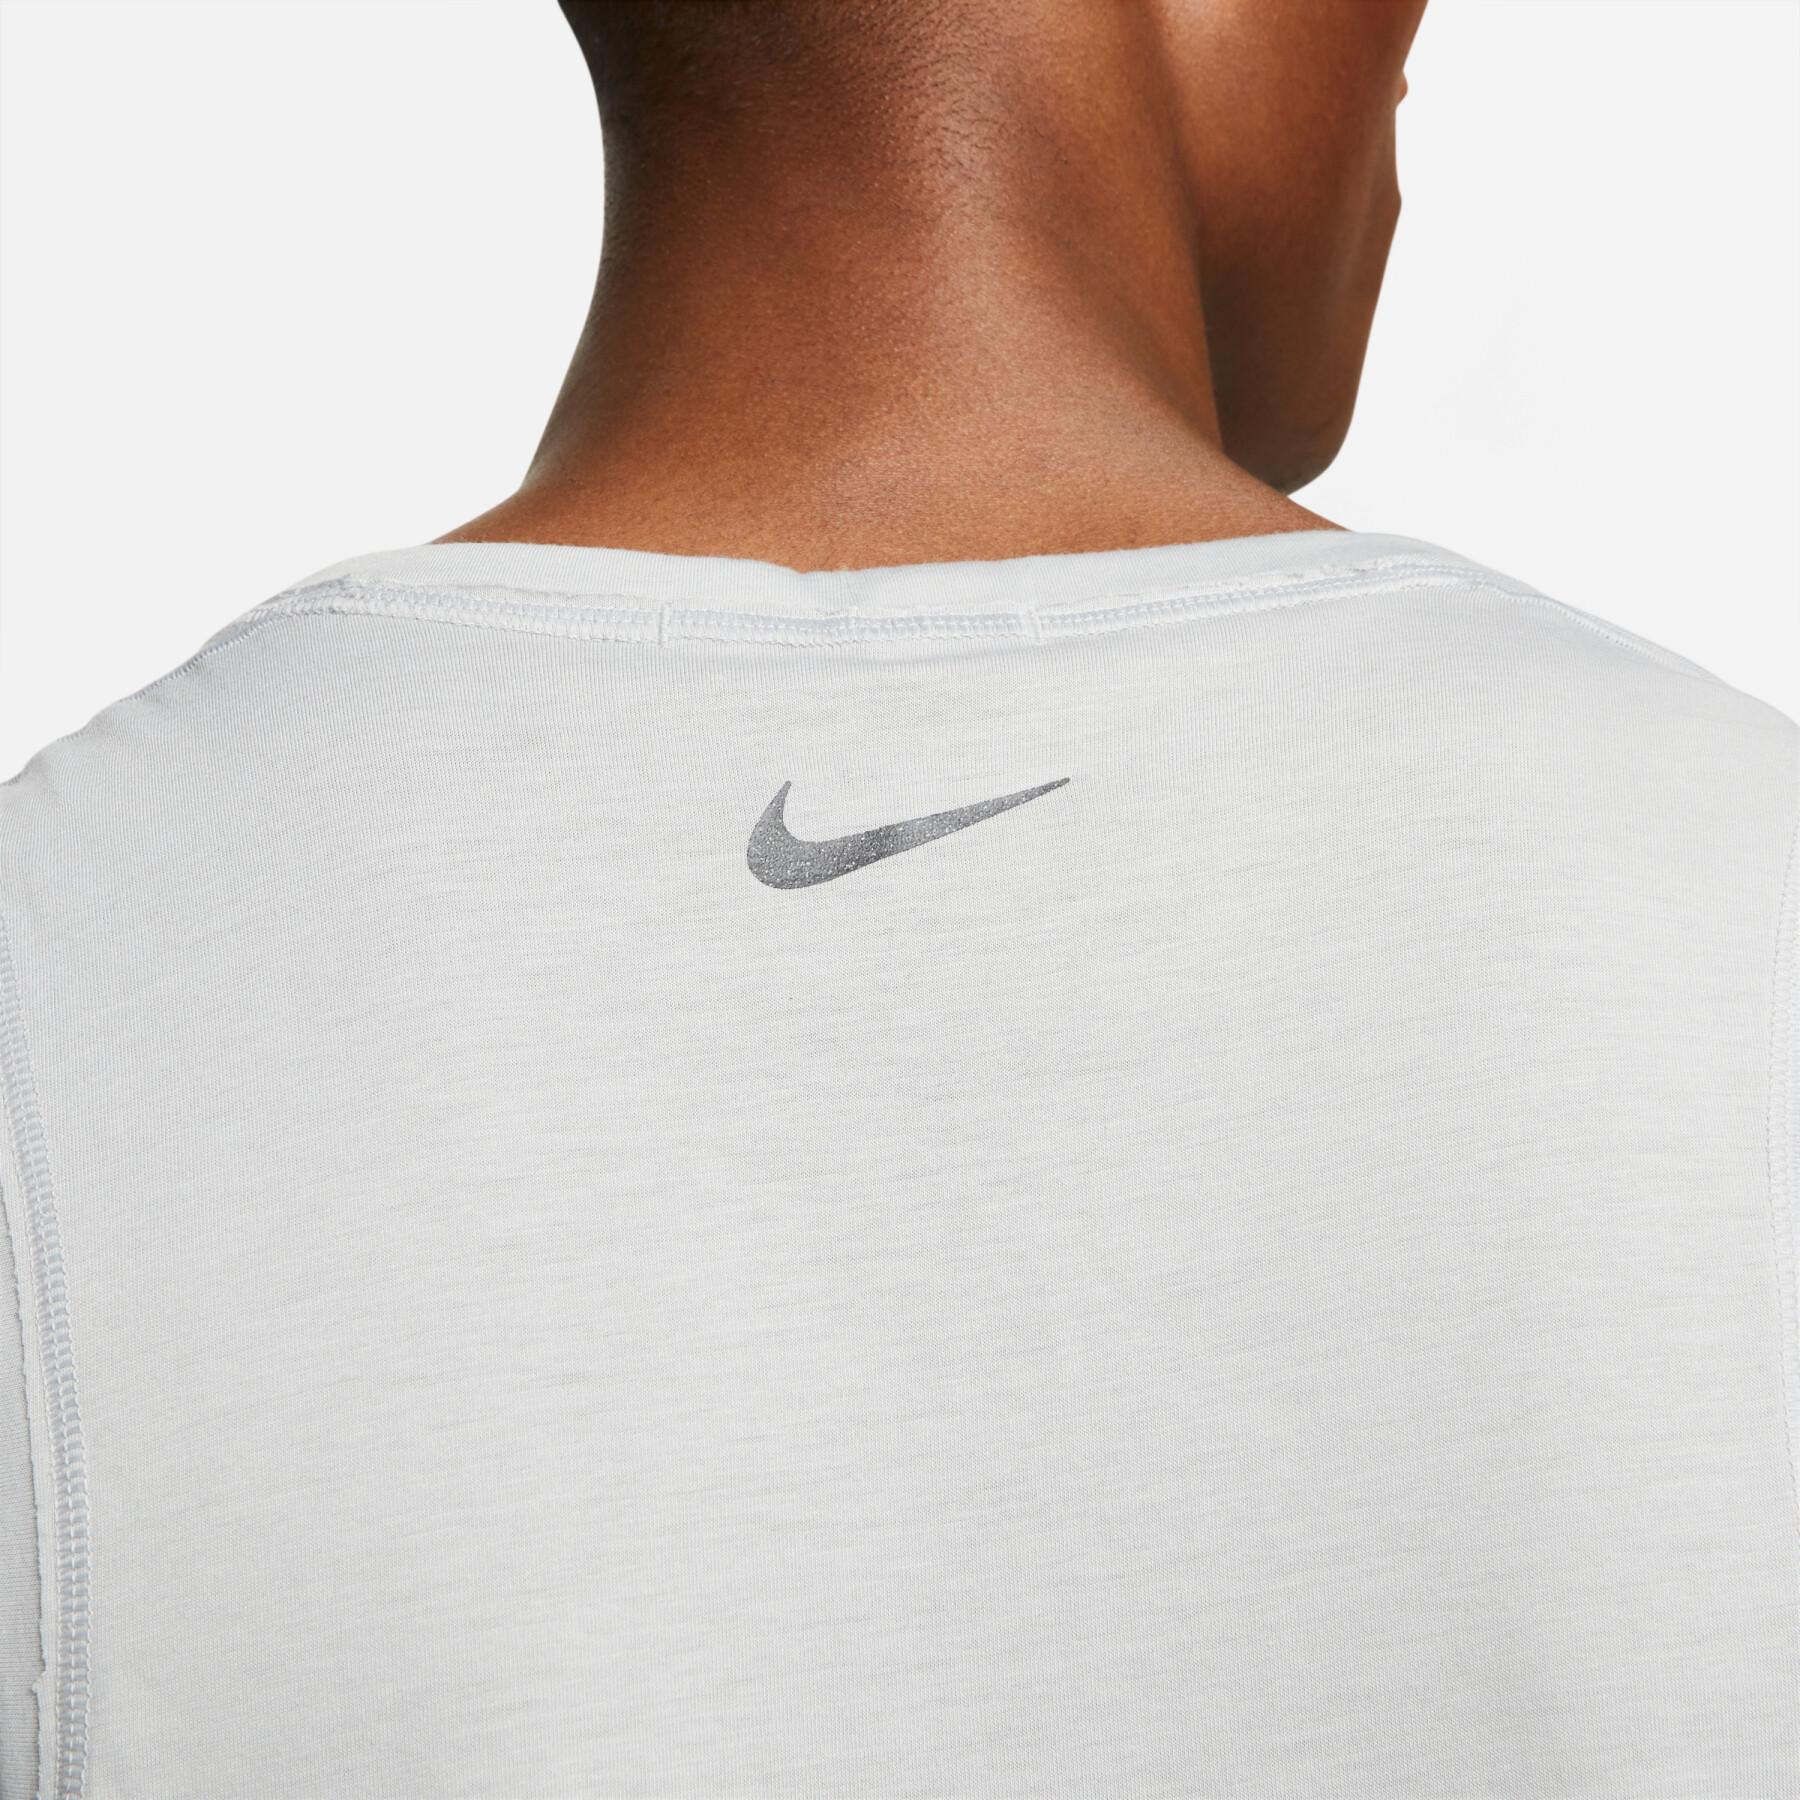 Tank top Nike Yoga Dri-FIT Core - T-shirts - Men's Clothing - Fitness